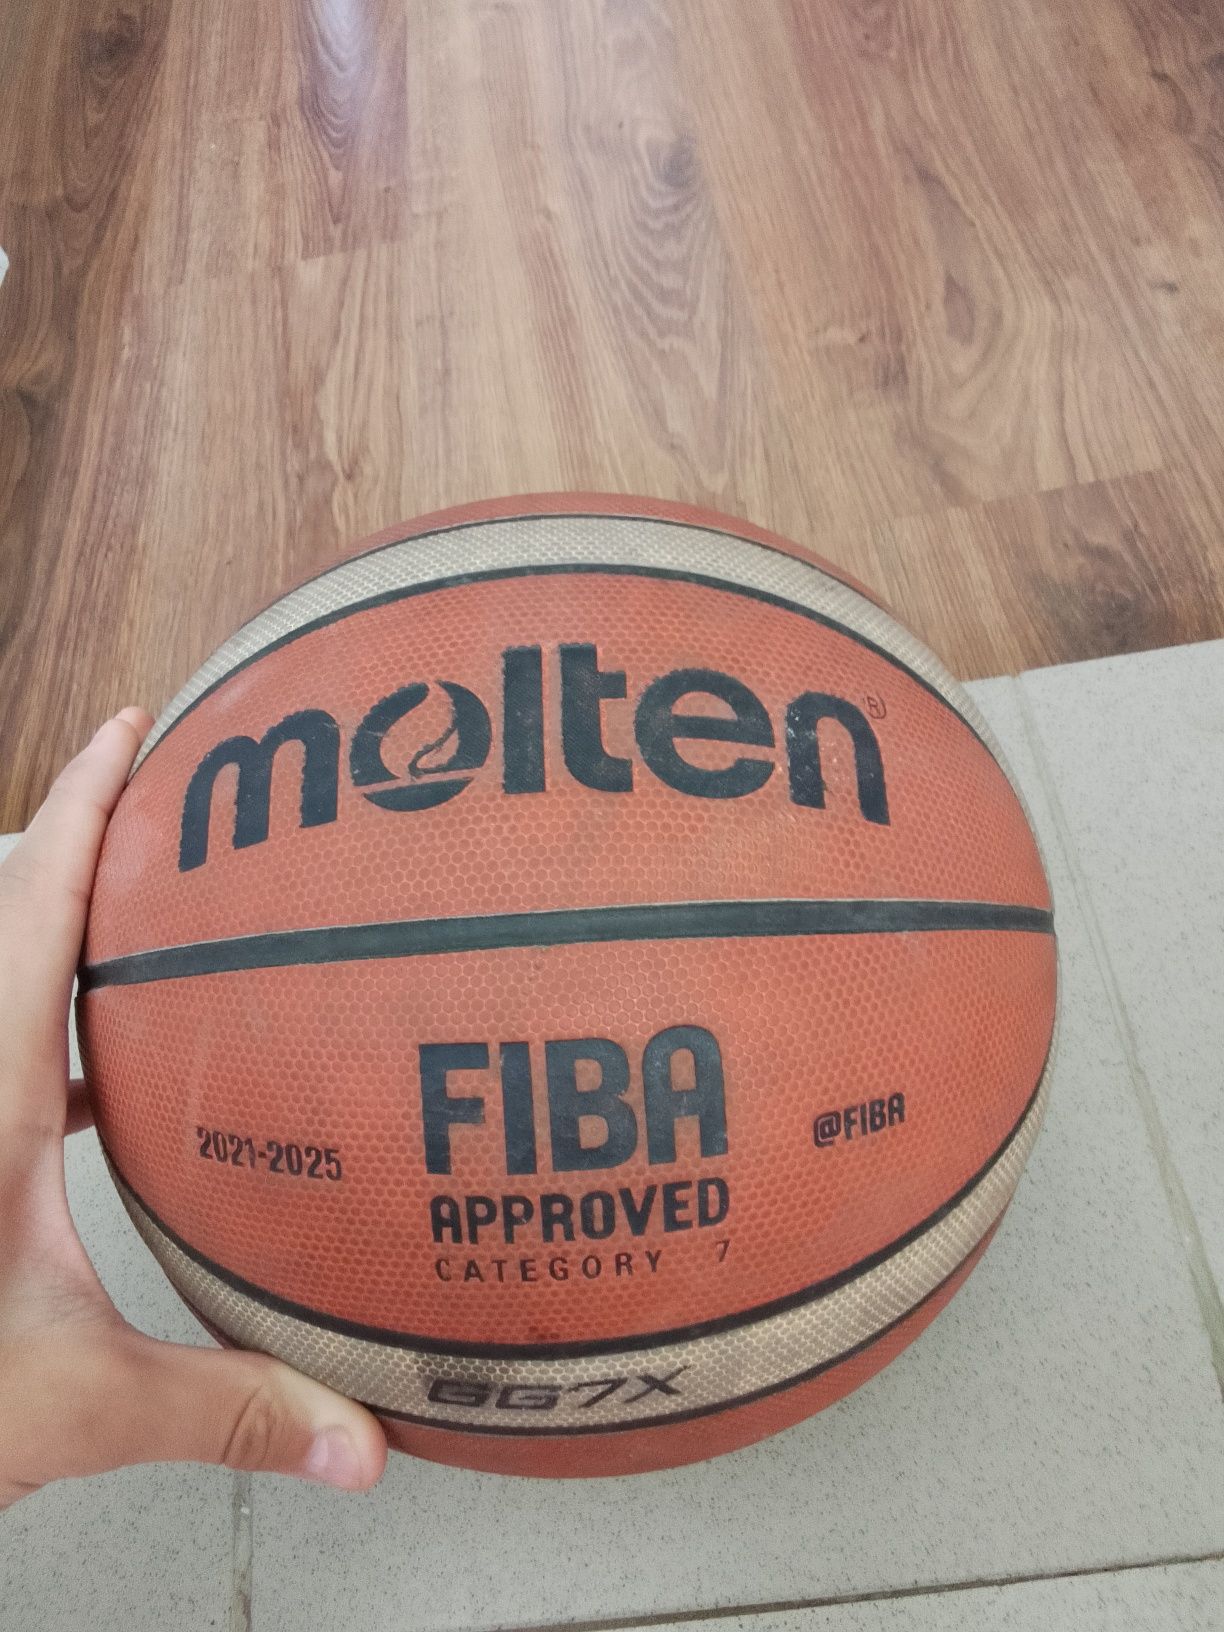 Продаю баскетбольный мяч